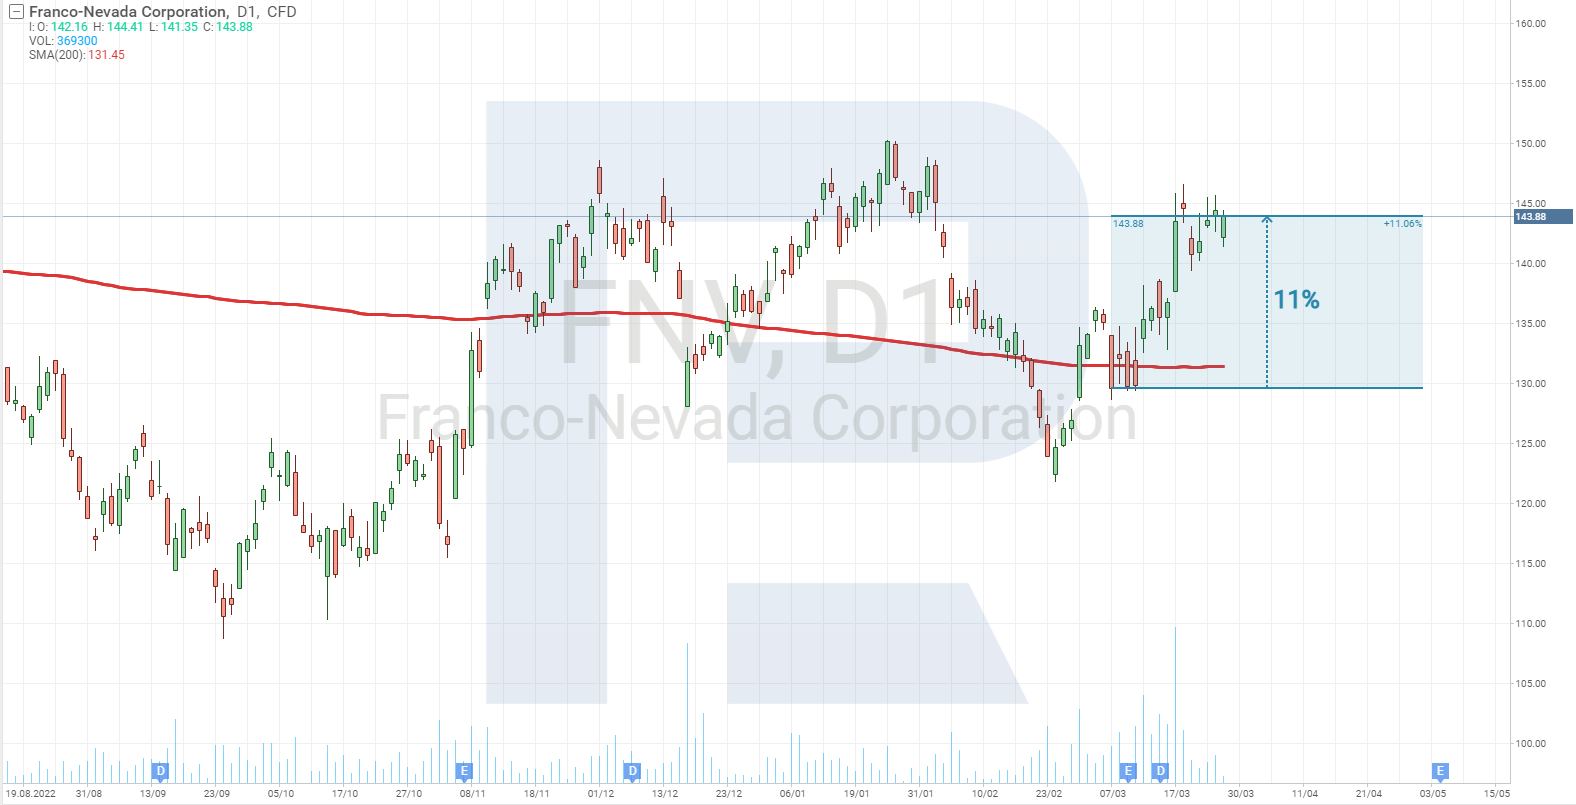 Franco-Nevada Corporation stock chart*